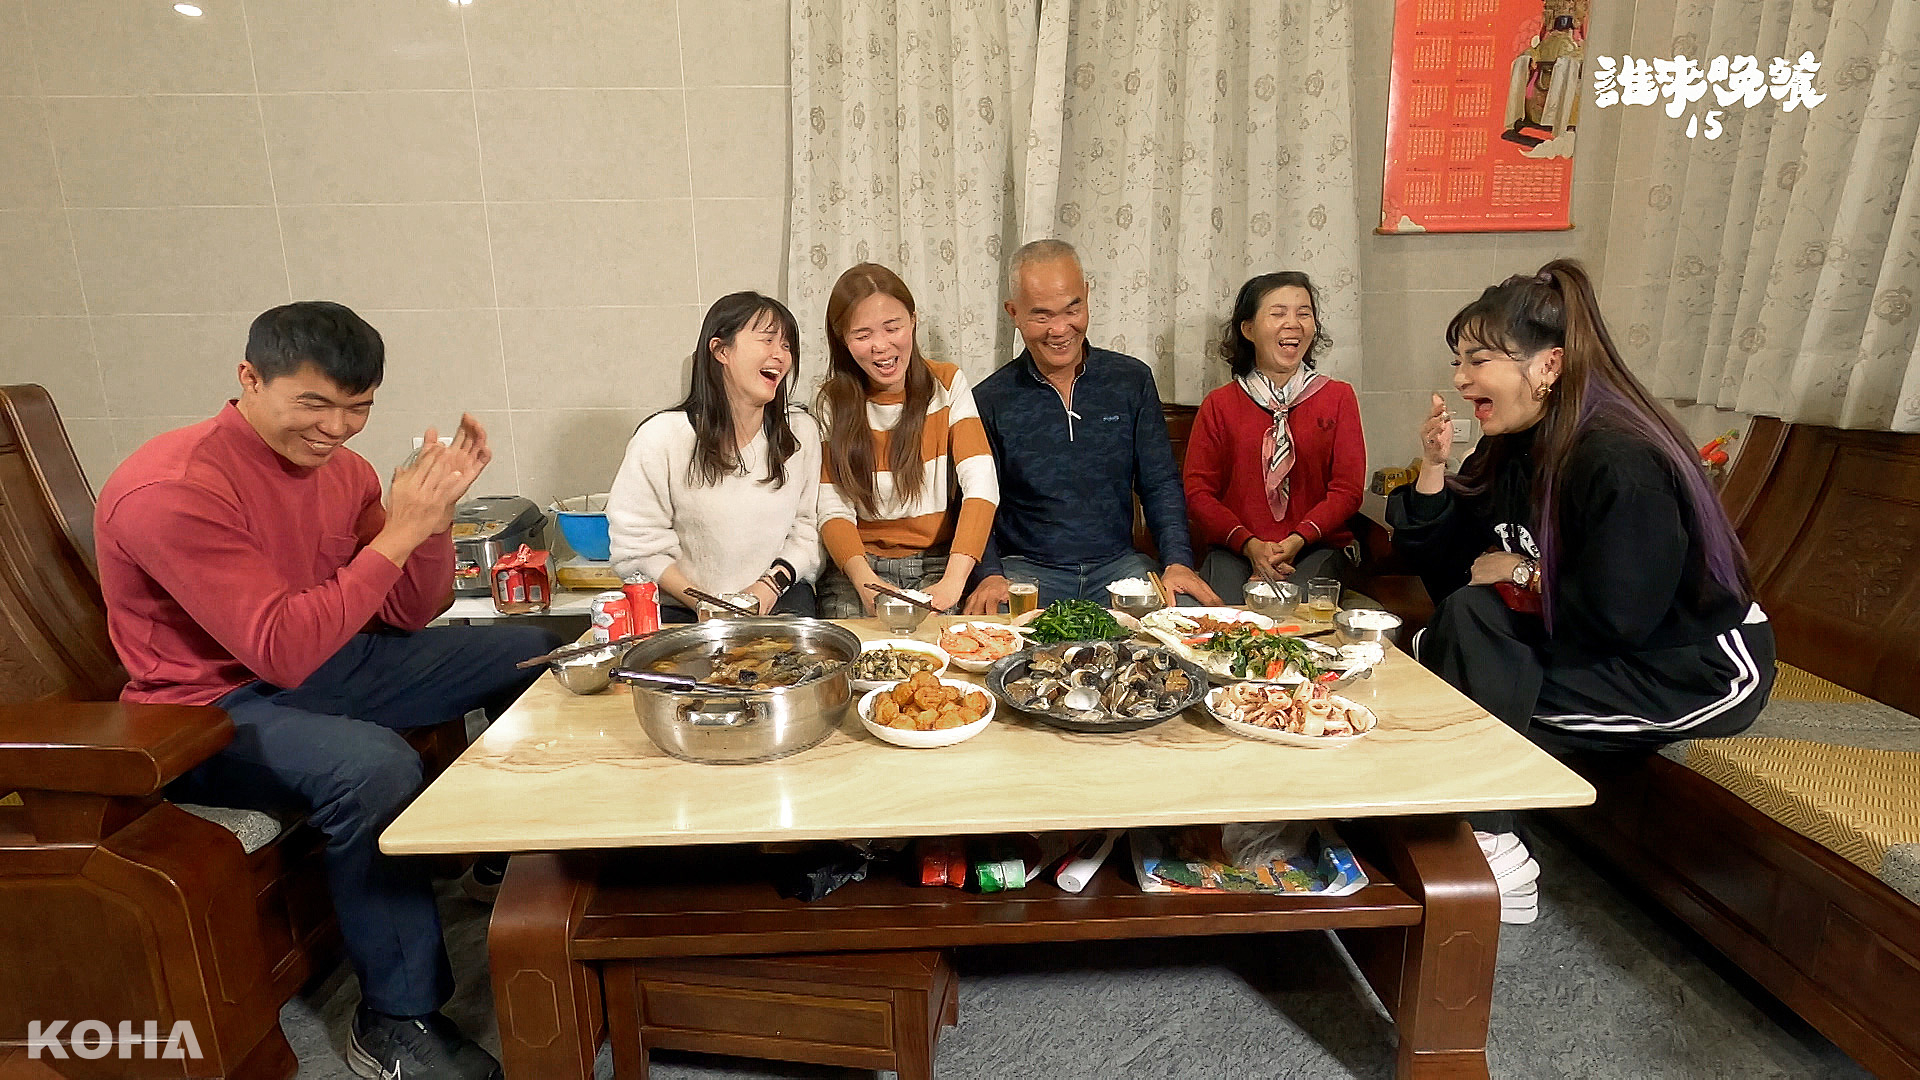 04 誰來晚餐15 王彩樺右1幽默風趣和受訪家庭打成一片。